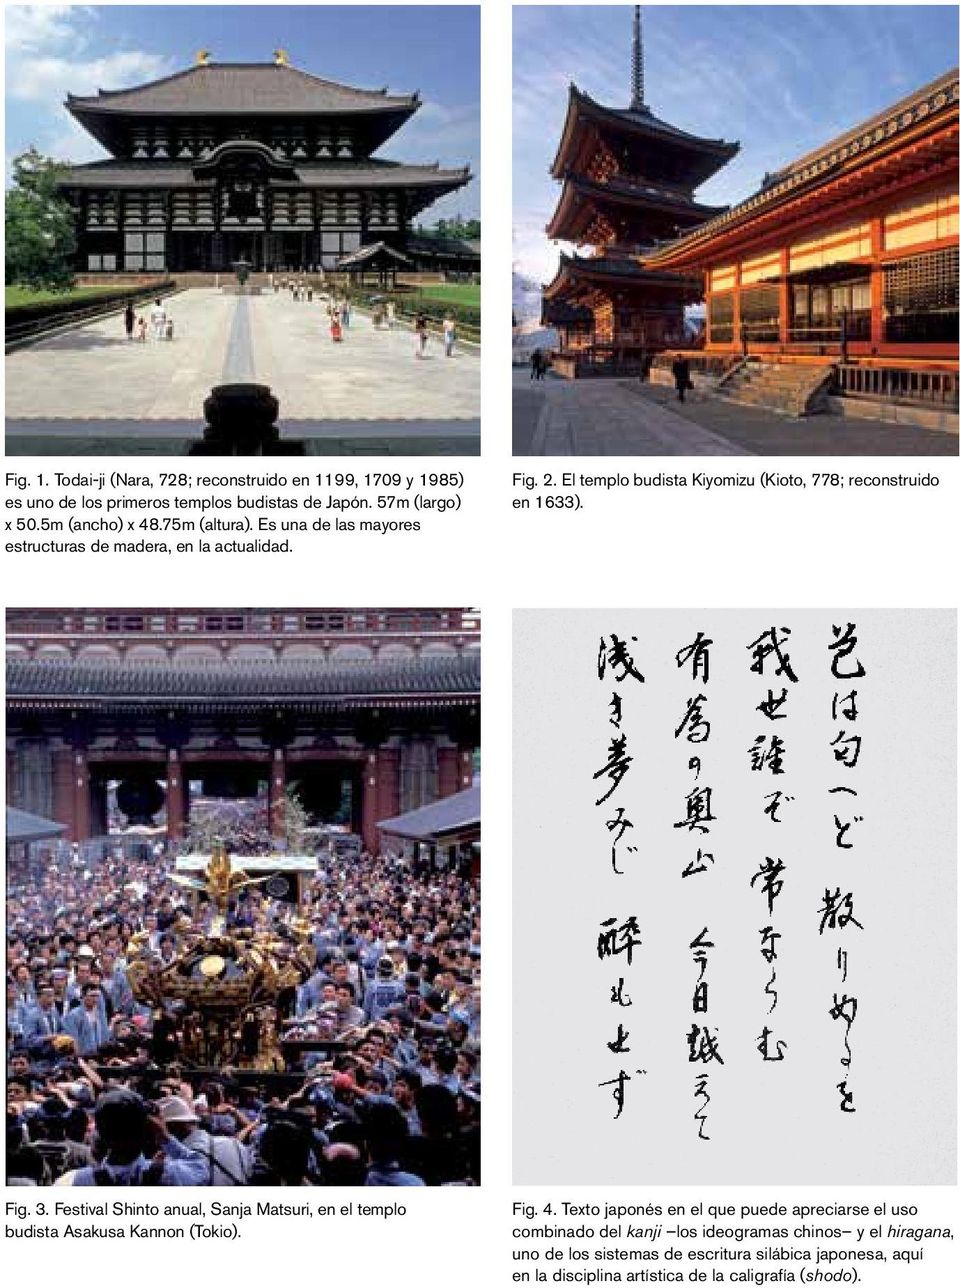 Festival Shinto anual, Sanja Matsuri, en el templo budista Asakusa Kannon (Tokio). Fig. 4.